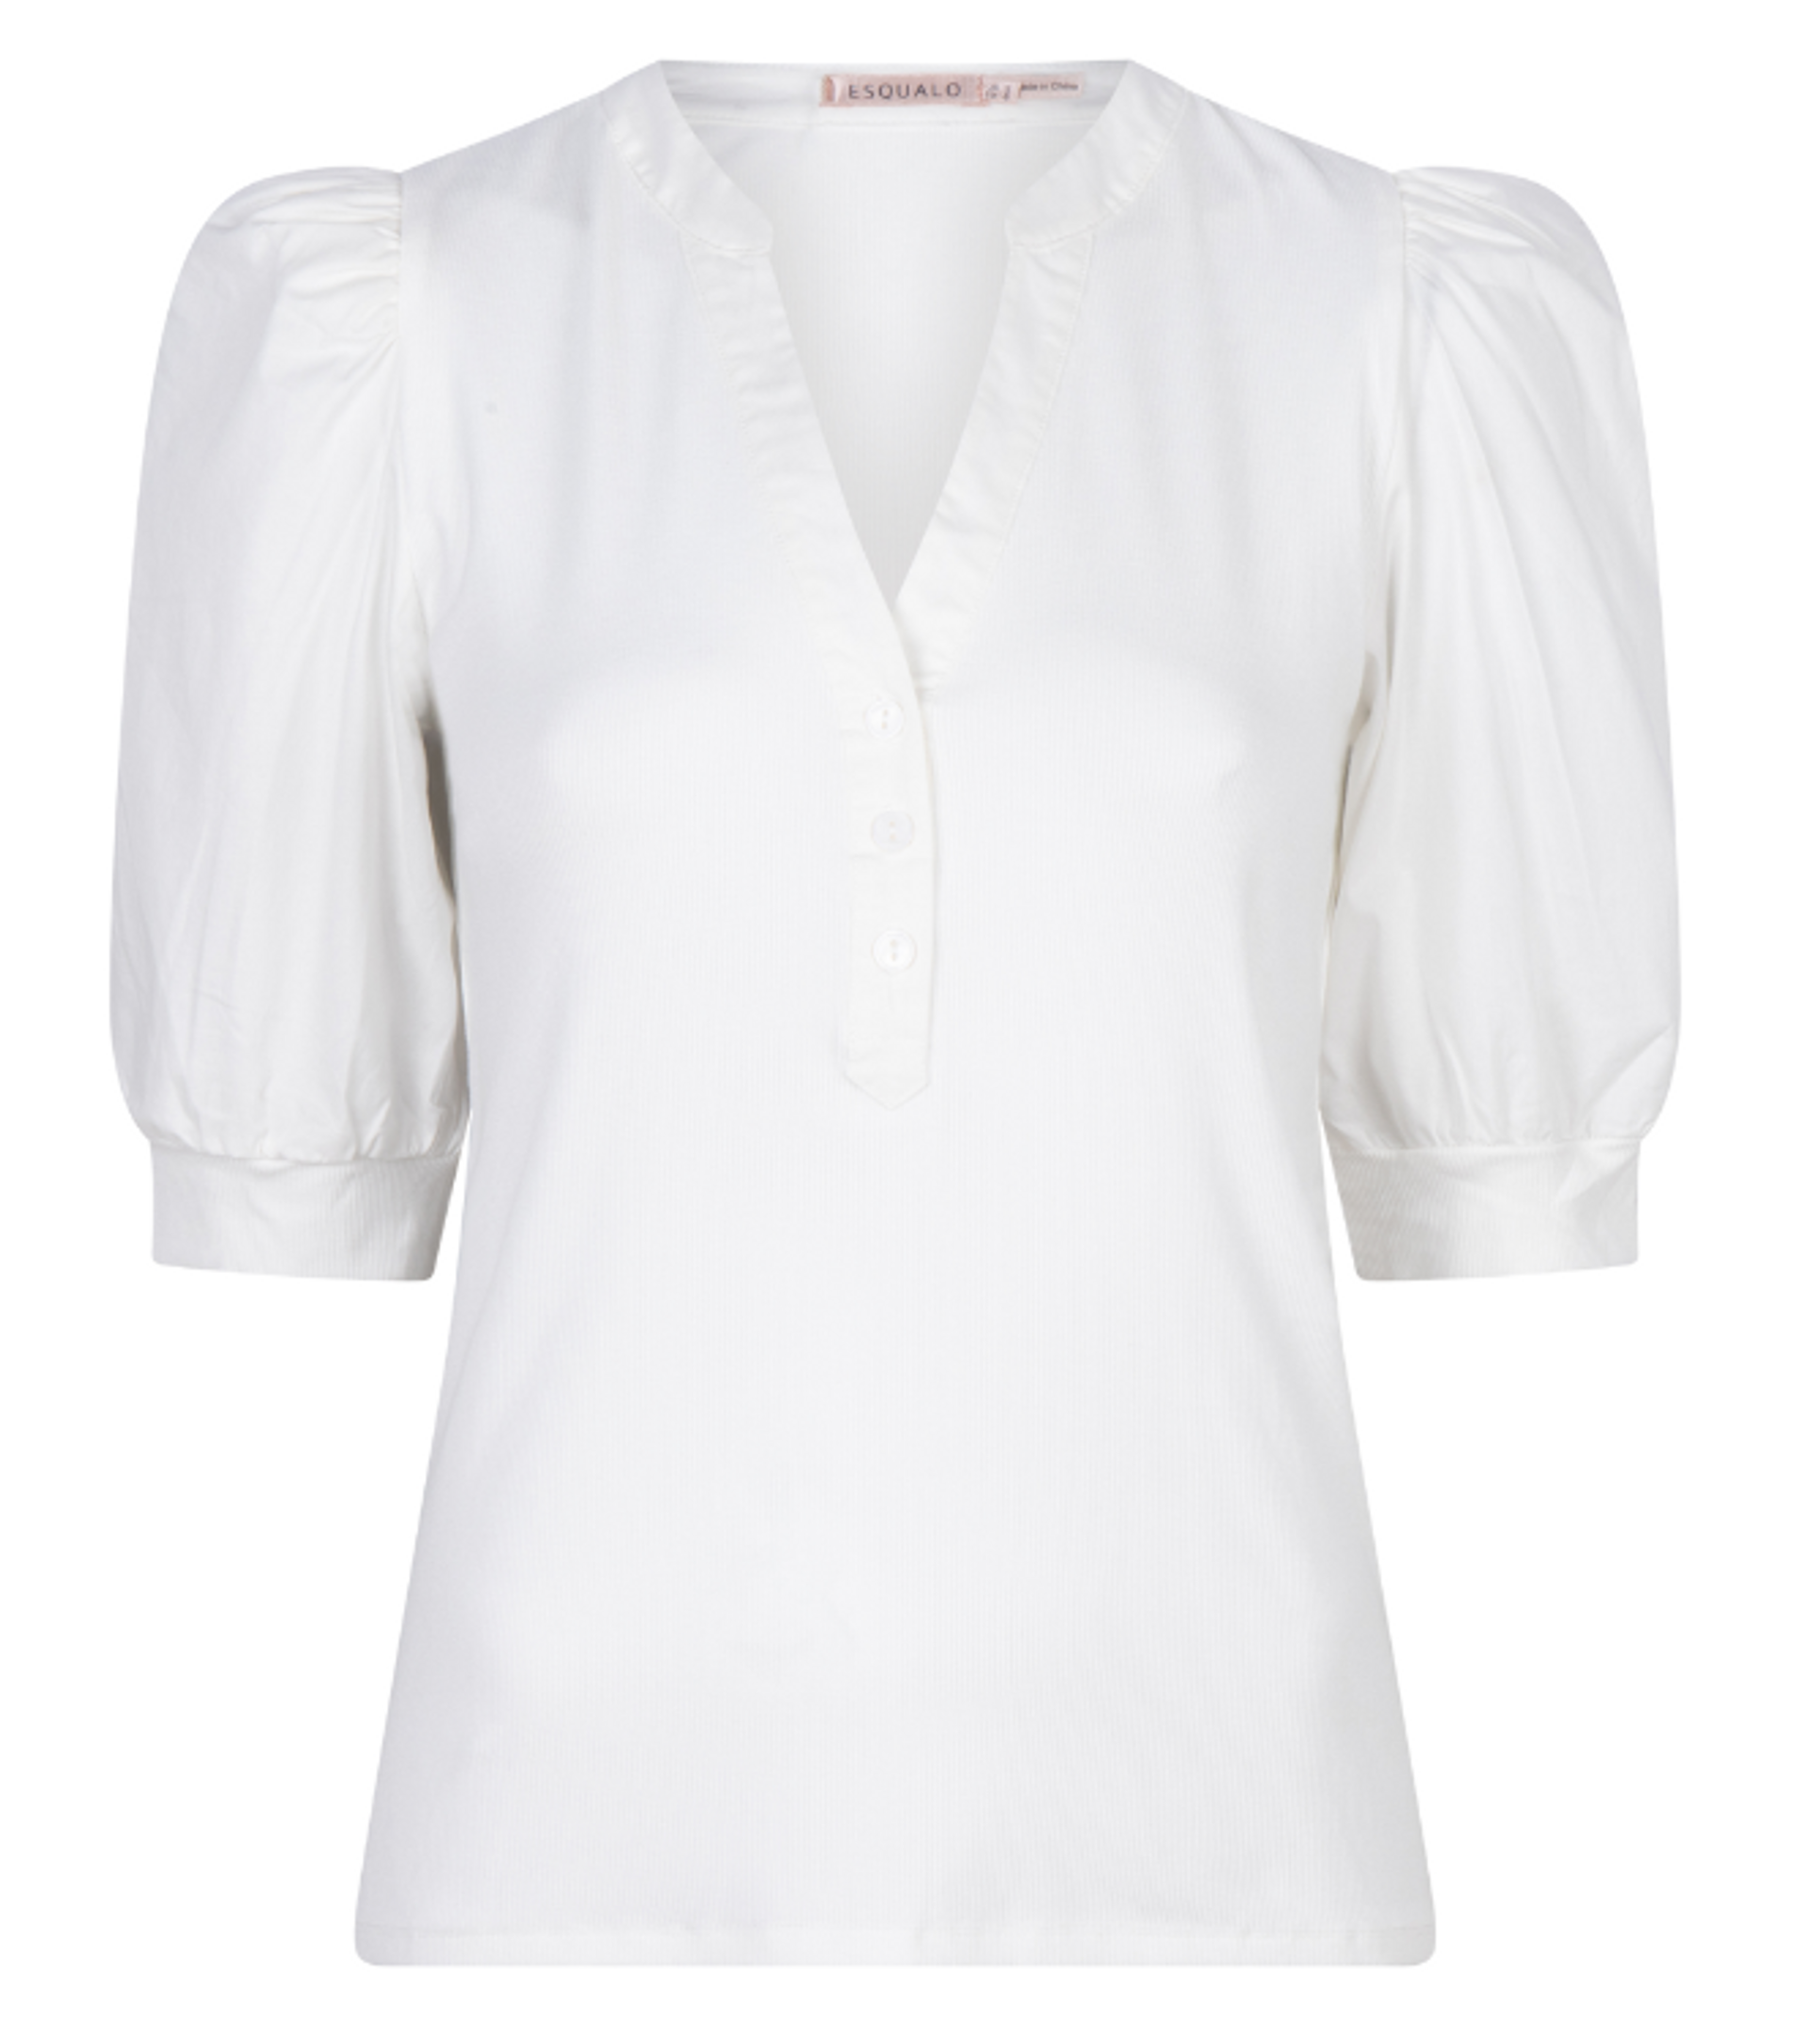 Women's tops | Women's blouses & shirts | Mountain Brook, AL